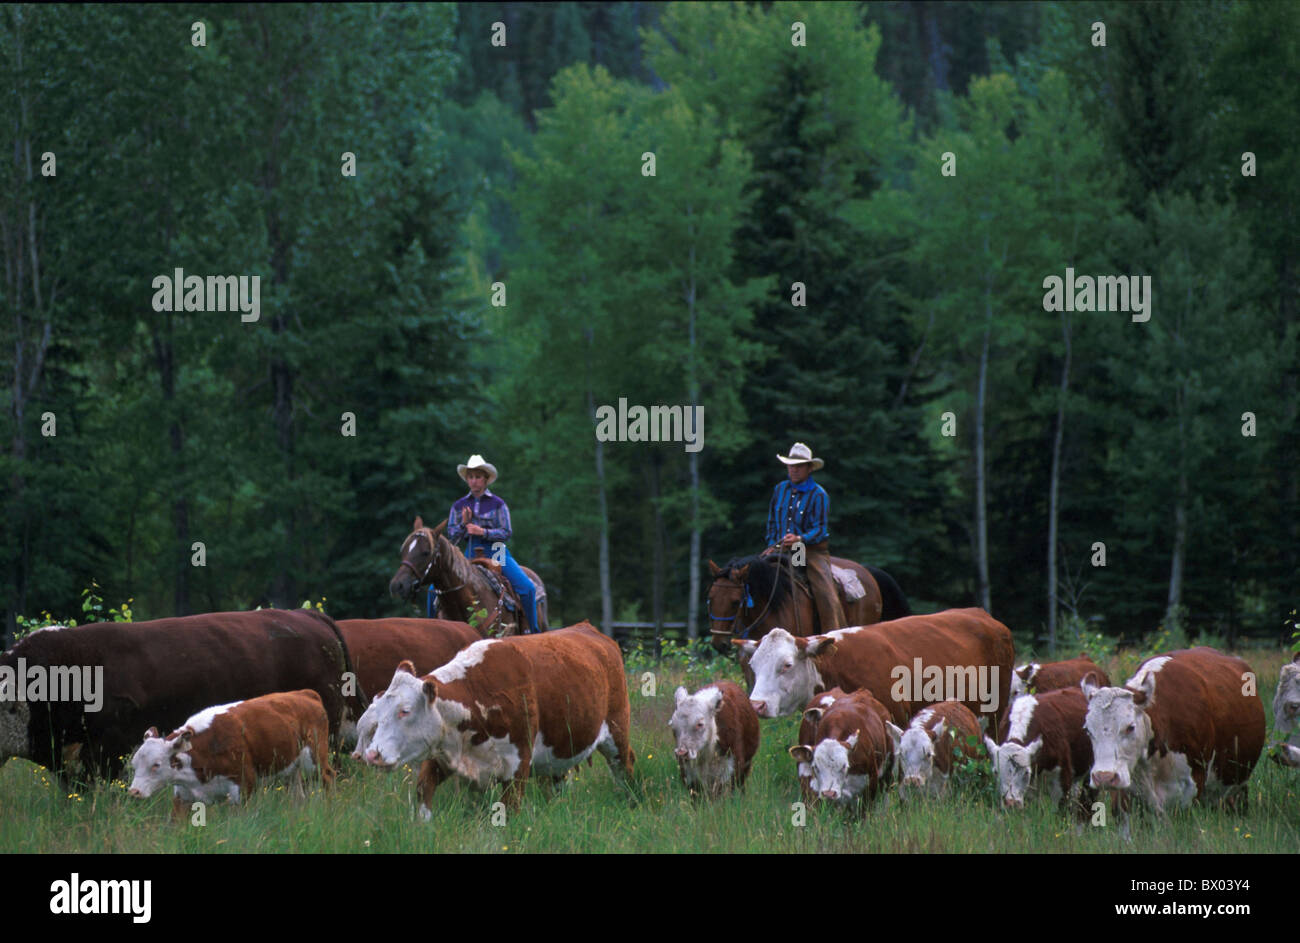 Agricoltura della Columbia britannica in Canada America del Nord America Chilcotin paese Cowboy mucche cavalli nessun modello di ri Foto Stock